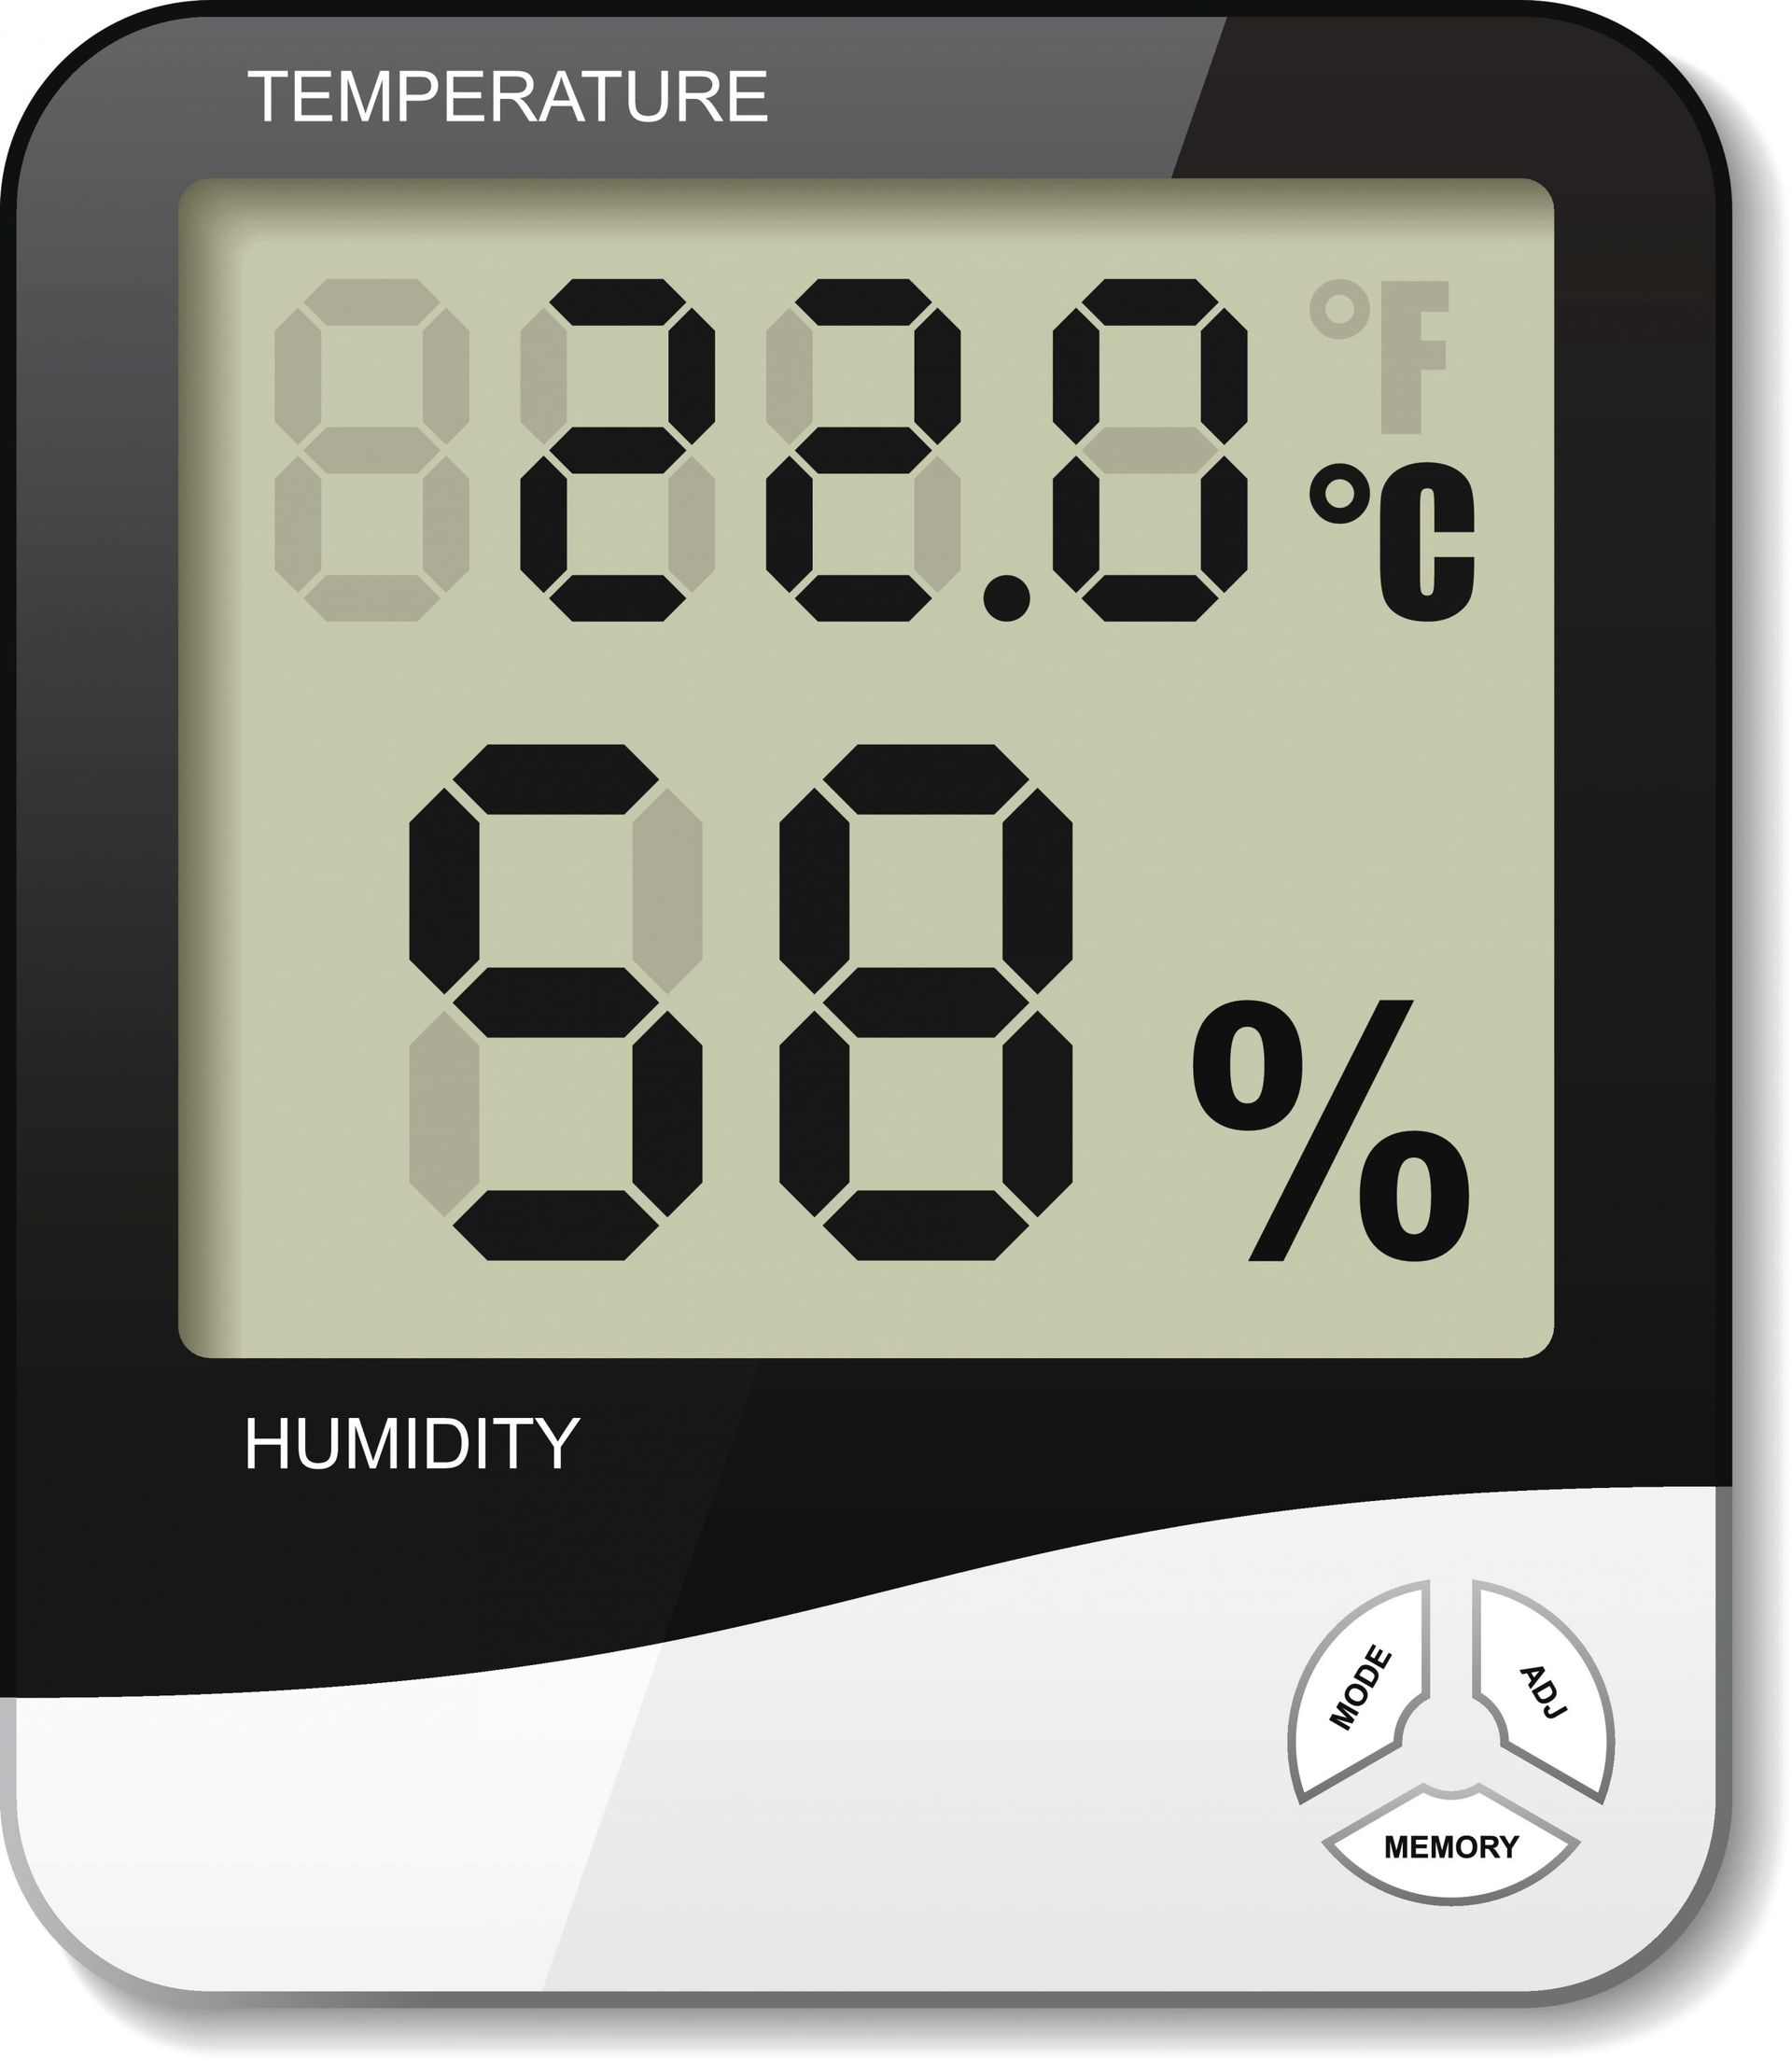 Comment mesurer le taux d'humidité idéal dans une maison?